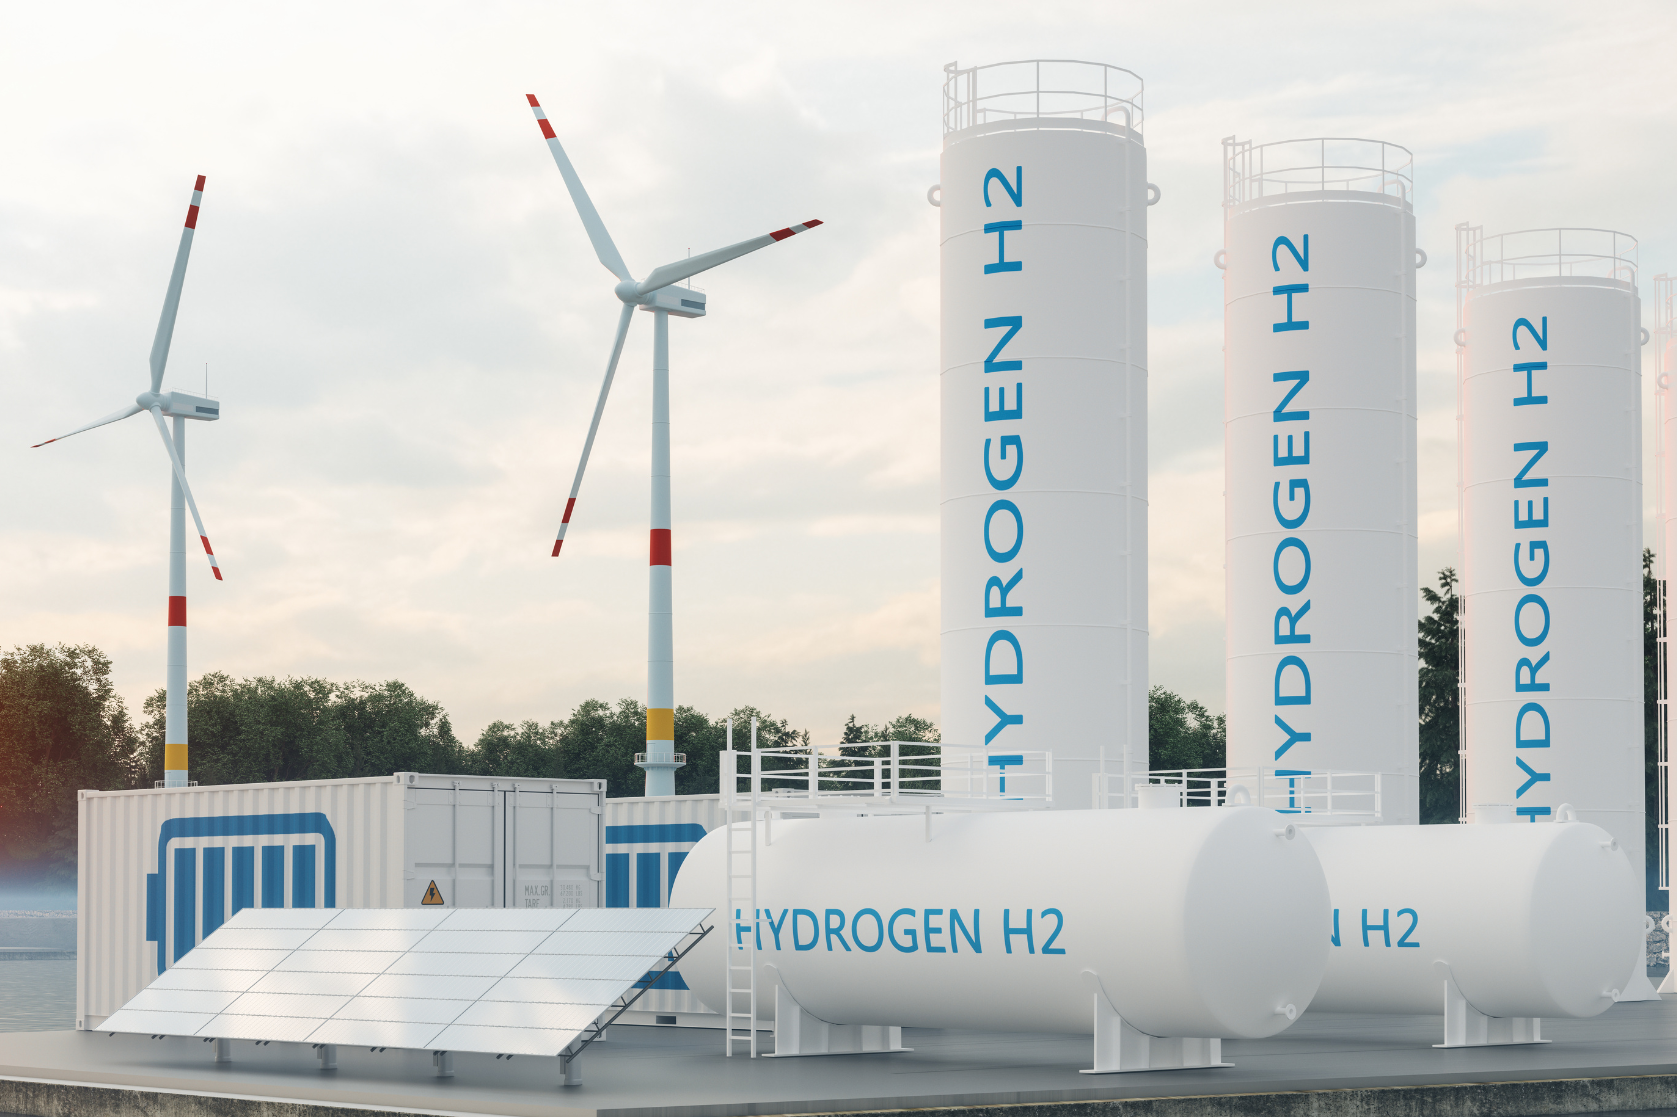 Sistema de armazenamento de energia, com compartimento de armazenamento de hidrogênio, duas turbinas eólicas e um painel solar.